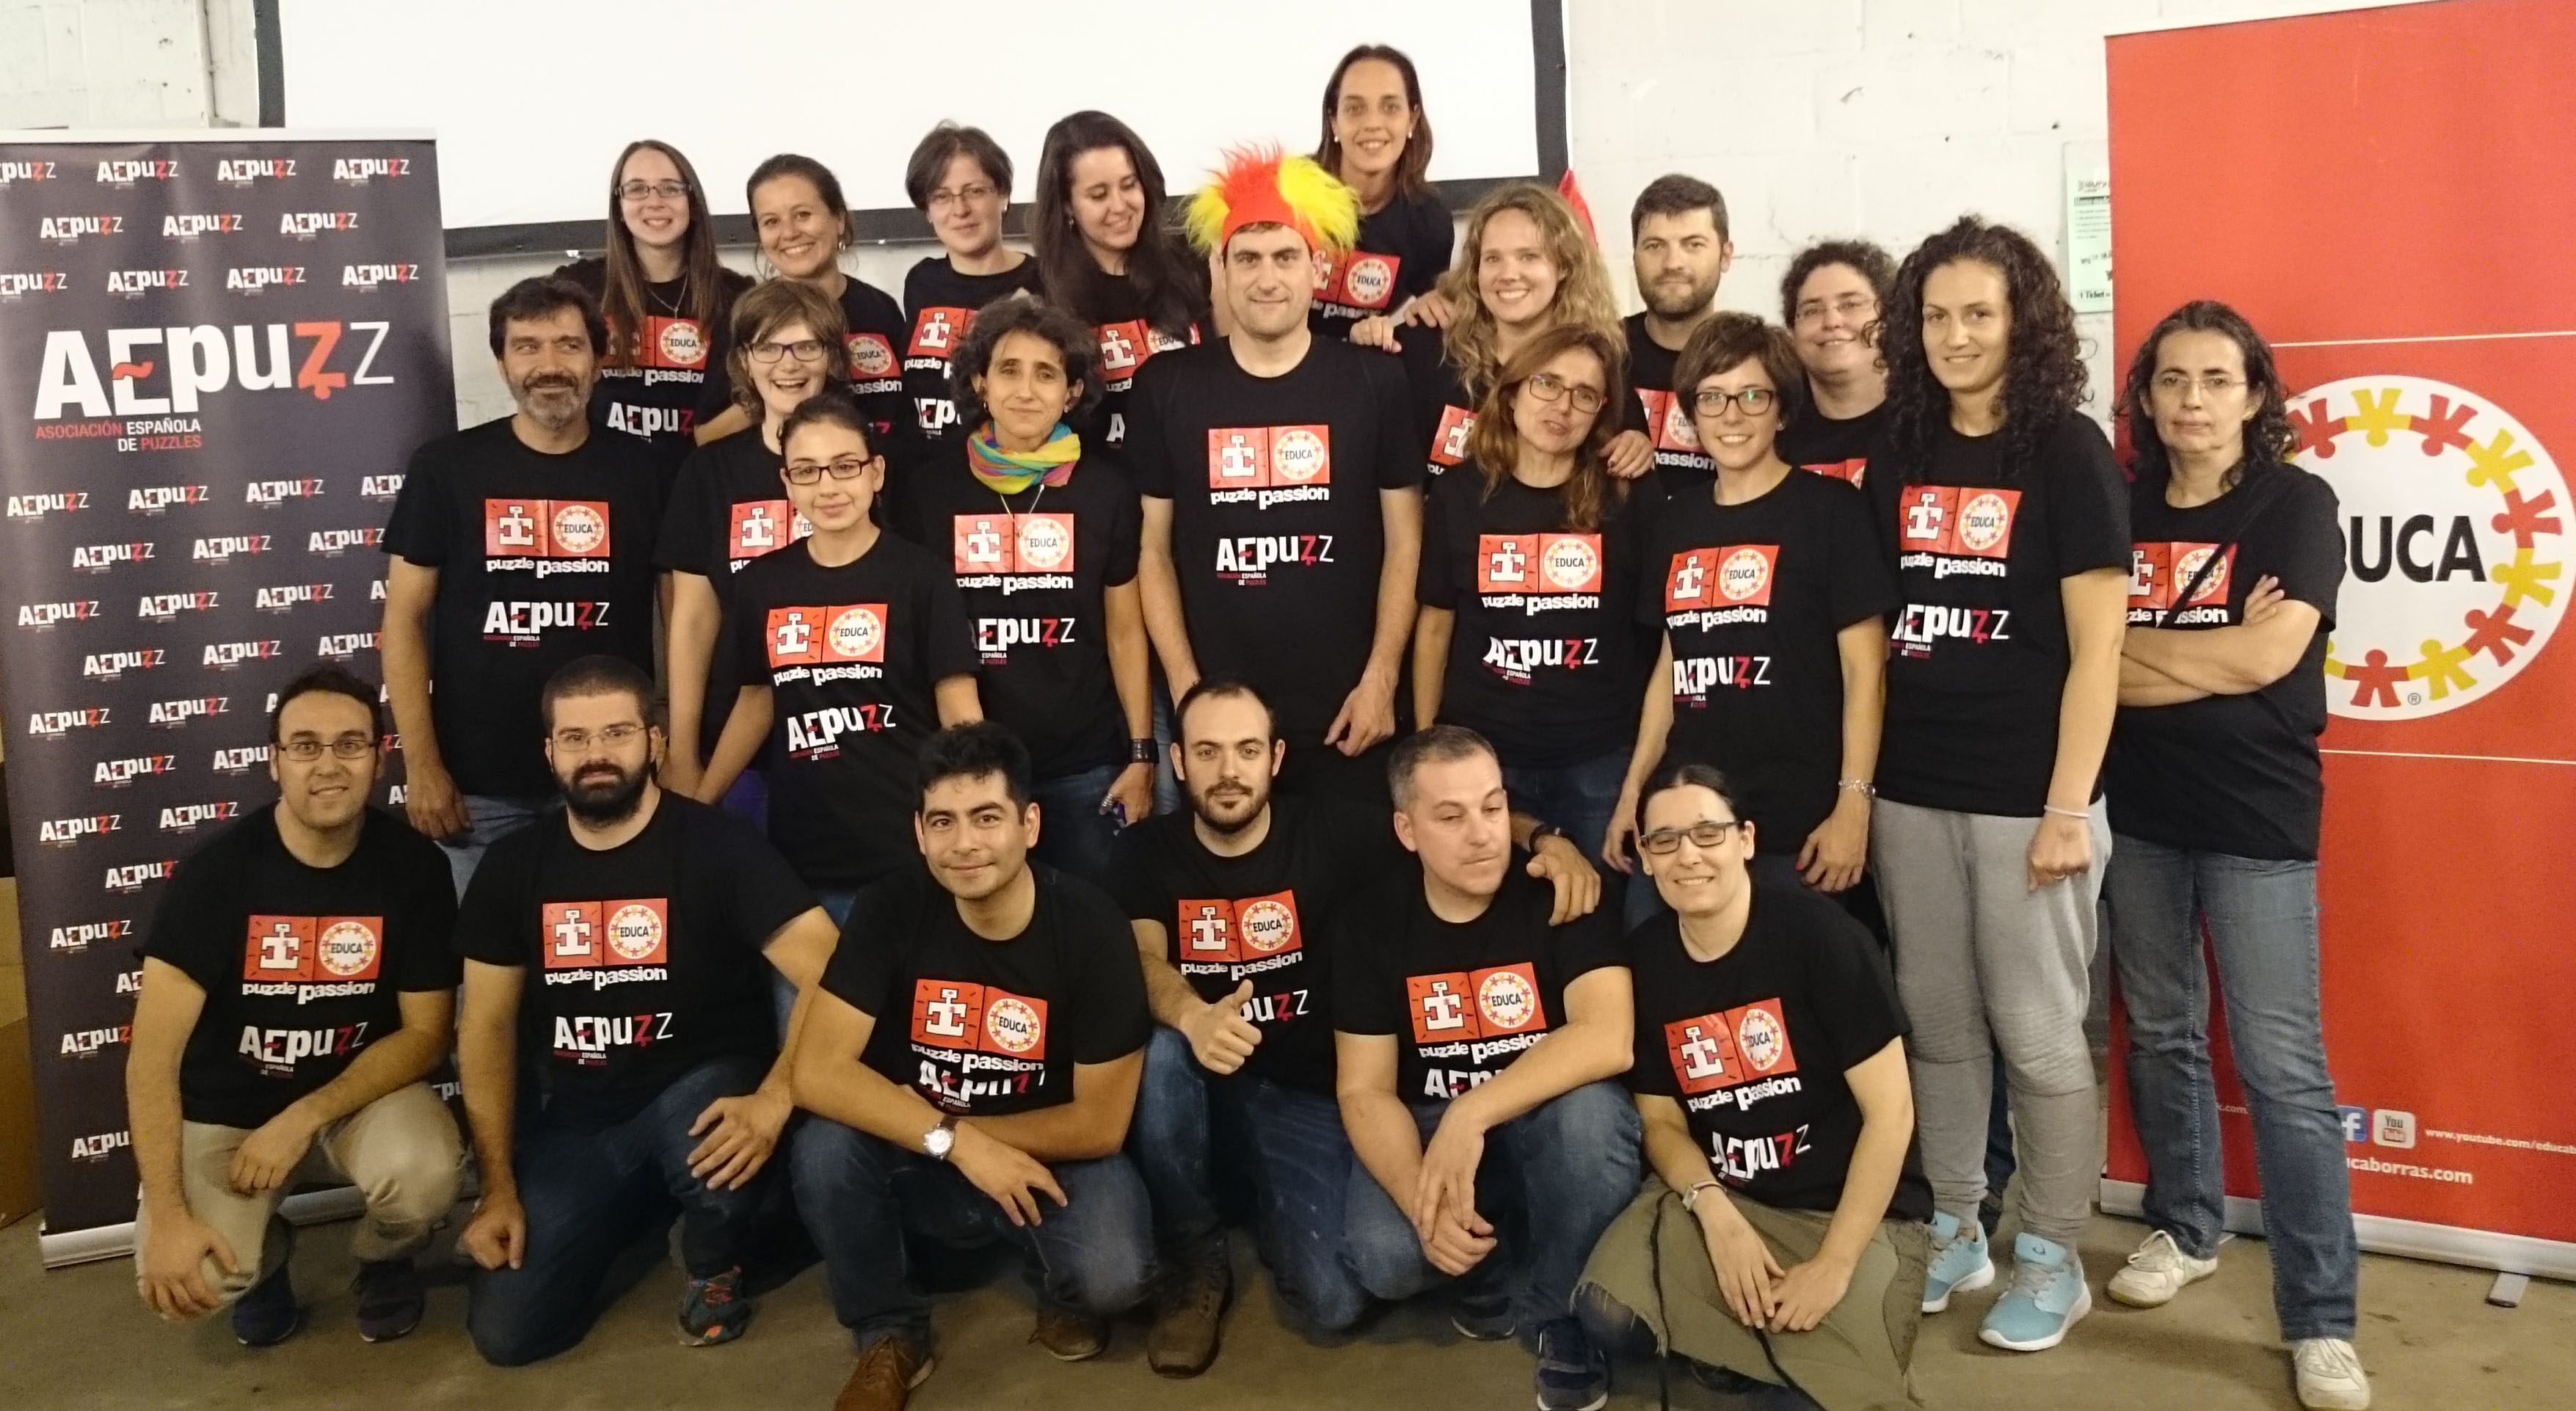 Selección Española de Puzzles en las 24h de Hannut 2015